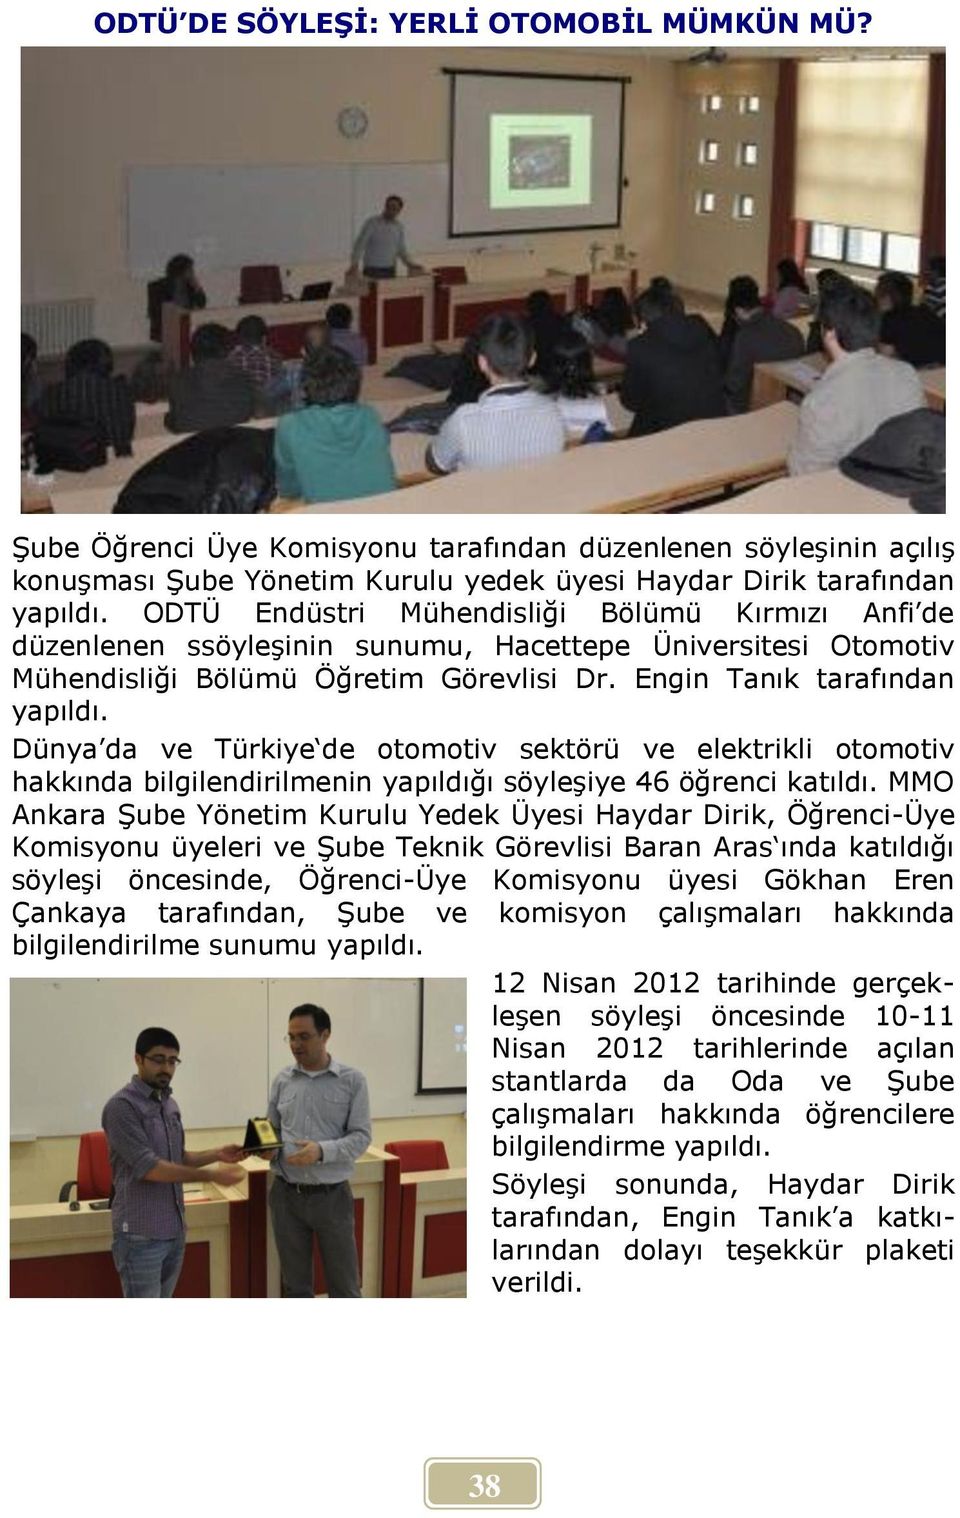 Dünya da ve Türkiye de otomotiv sektörü ve elektrikli otomotiv hakkında bilgilendirilmenin yapıldığı söyleşiye 46 öğrenci katıldı.